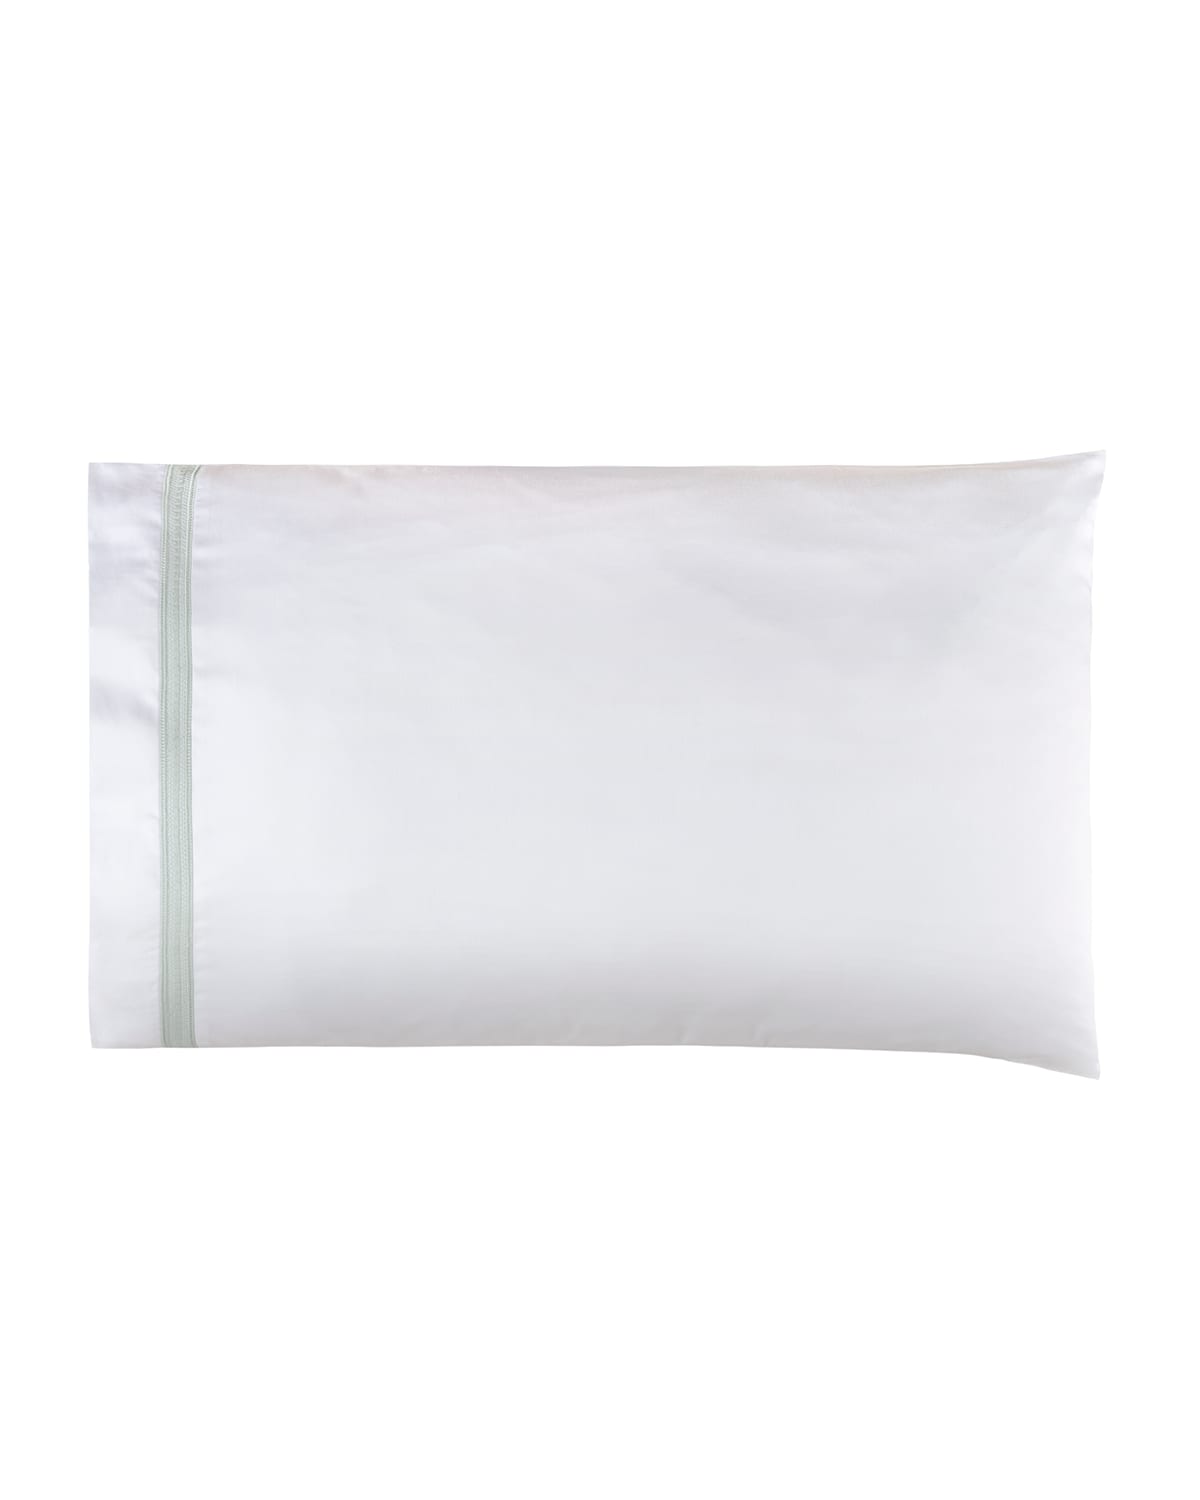 Bovi Fine Linens Devere Pair of Standard Pillowcases